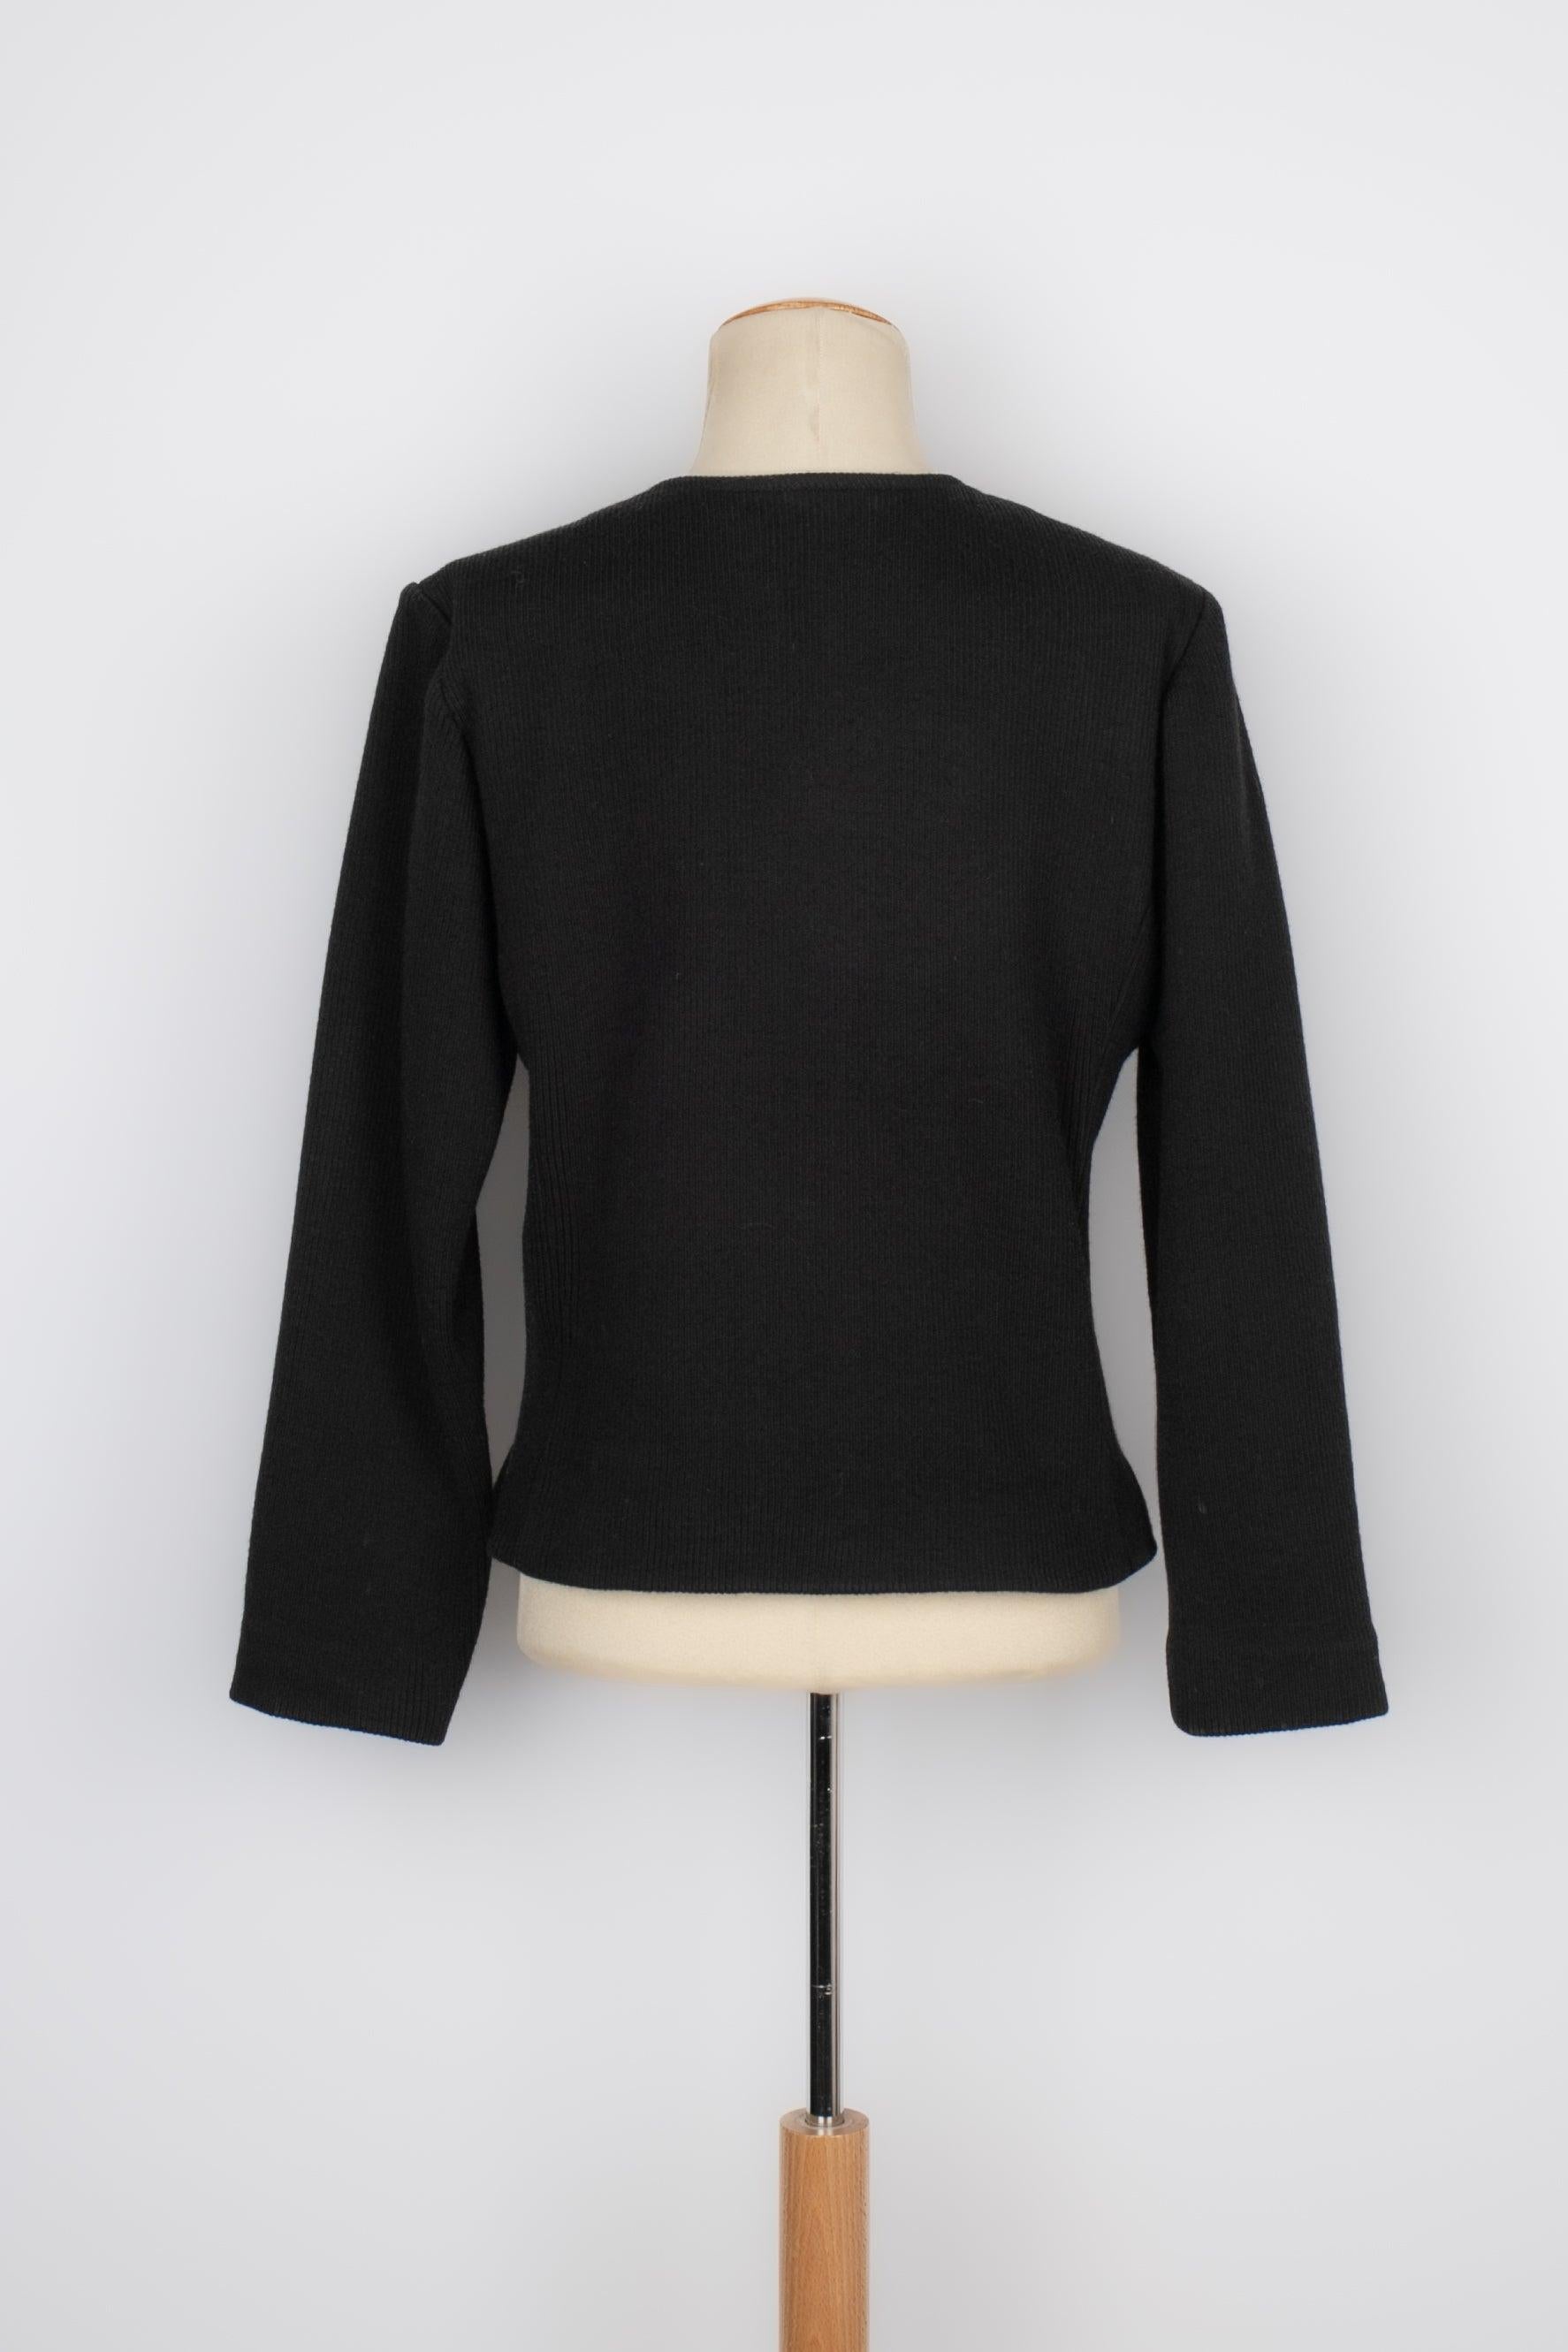 Veste en laine noire et lurex doré Yves Saint Laurent, années 1980 Excellent état - En vente à SAINT-OUEN-SUR-SEINE, FR